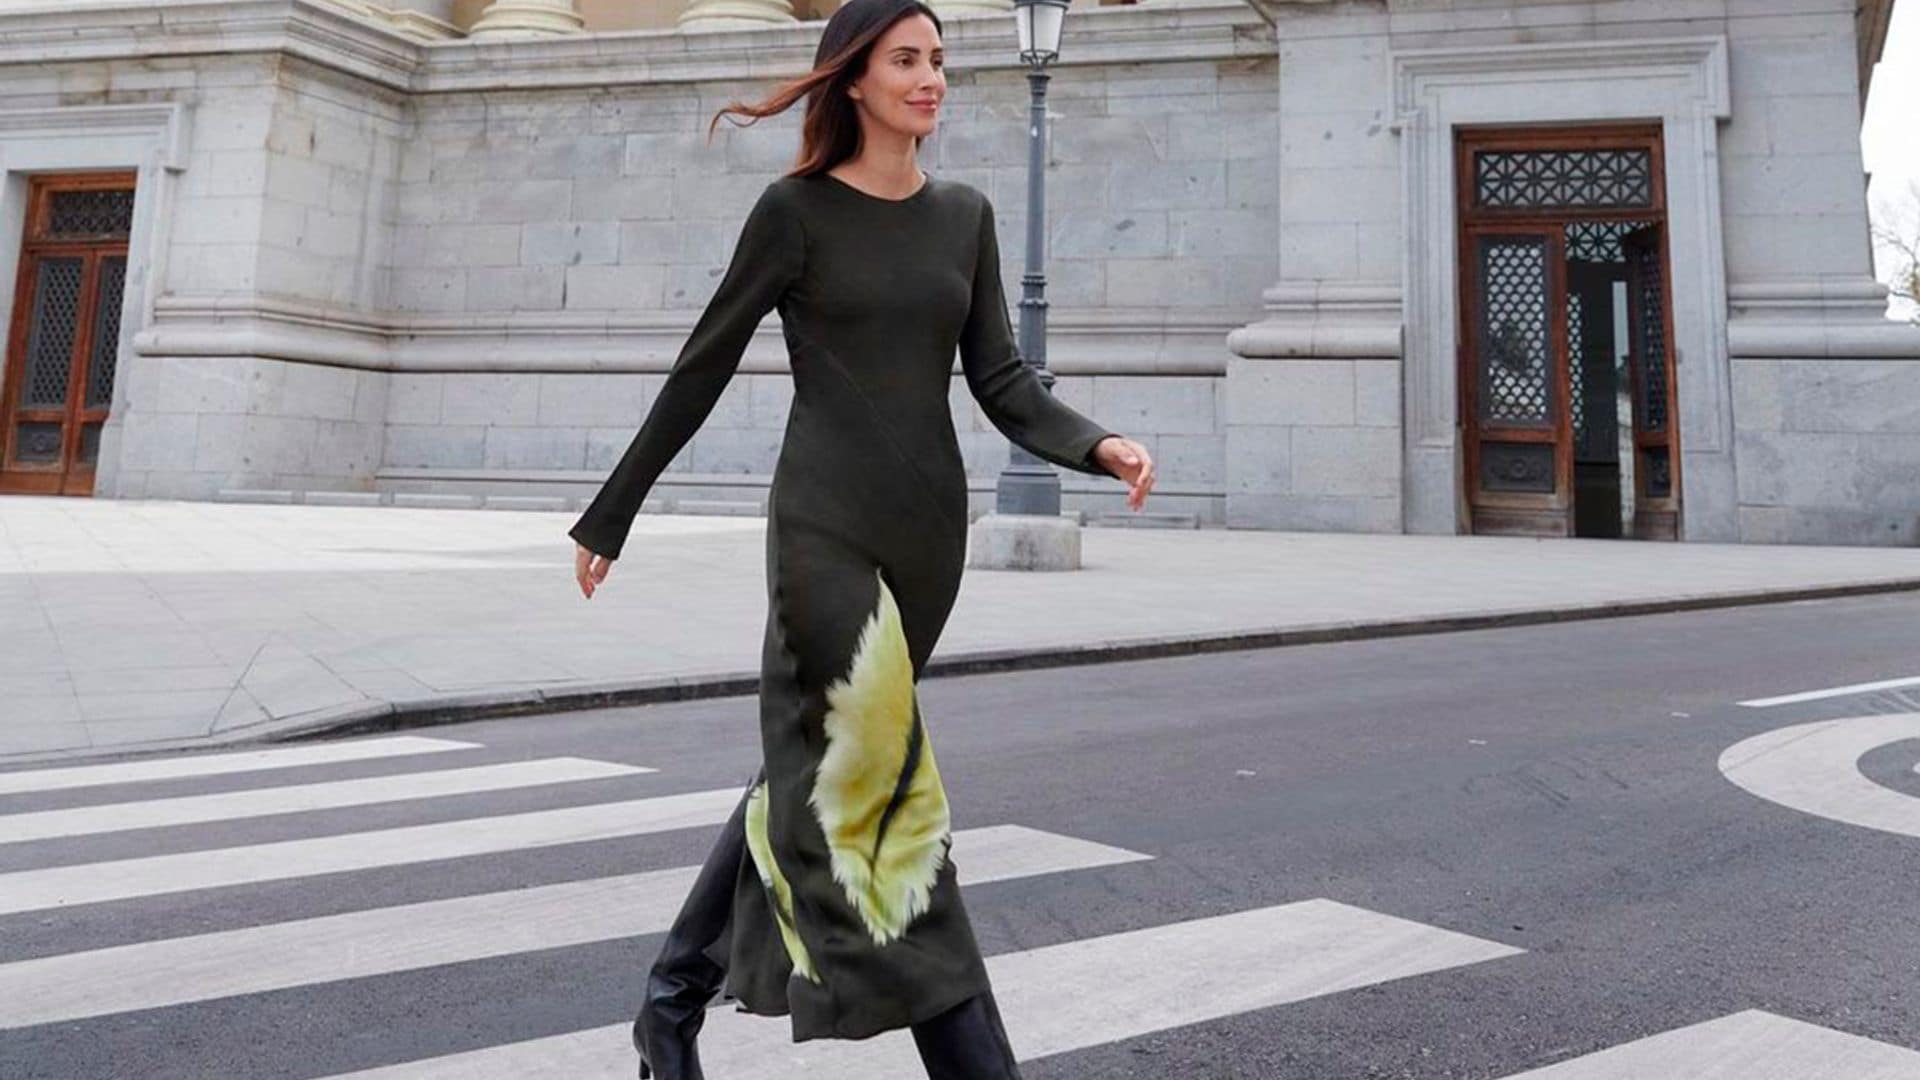 Sassa de Osma convierte un vestido de invitada 'made in Spain' en el mejor look para ir a trabajar